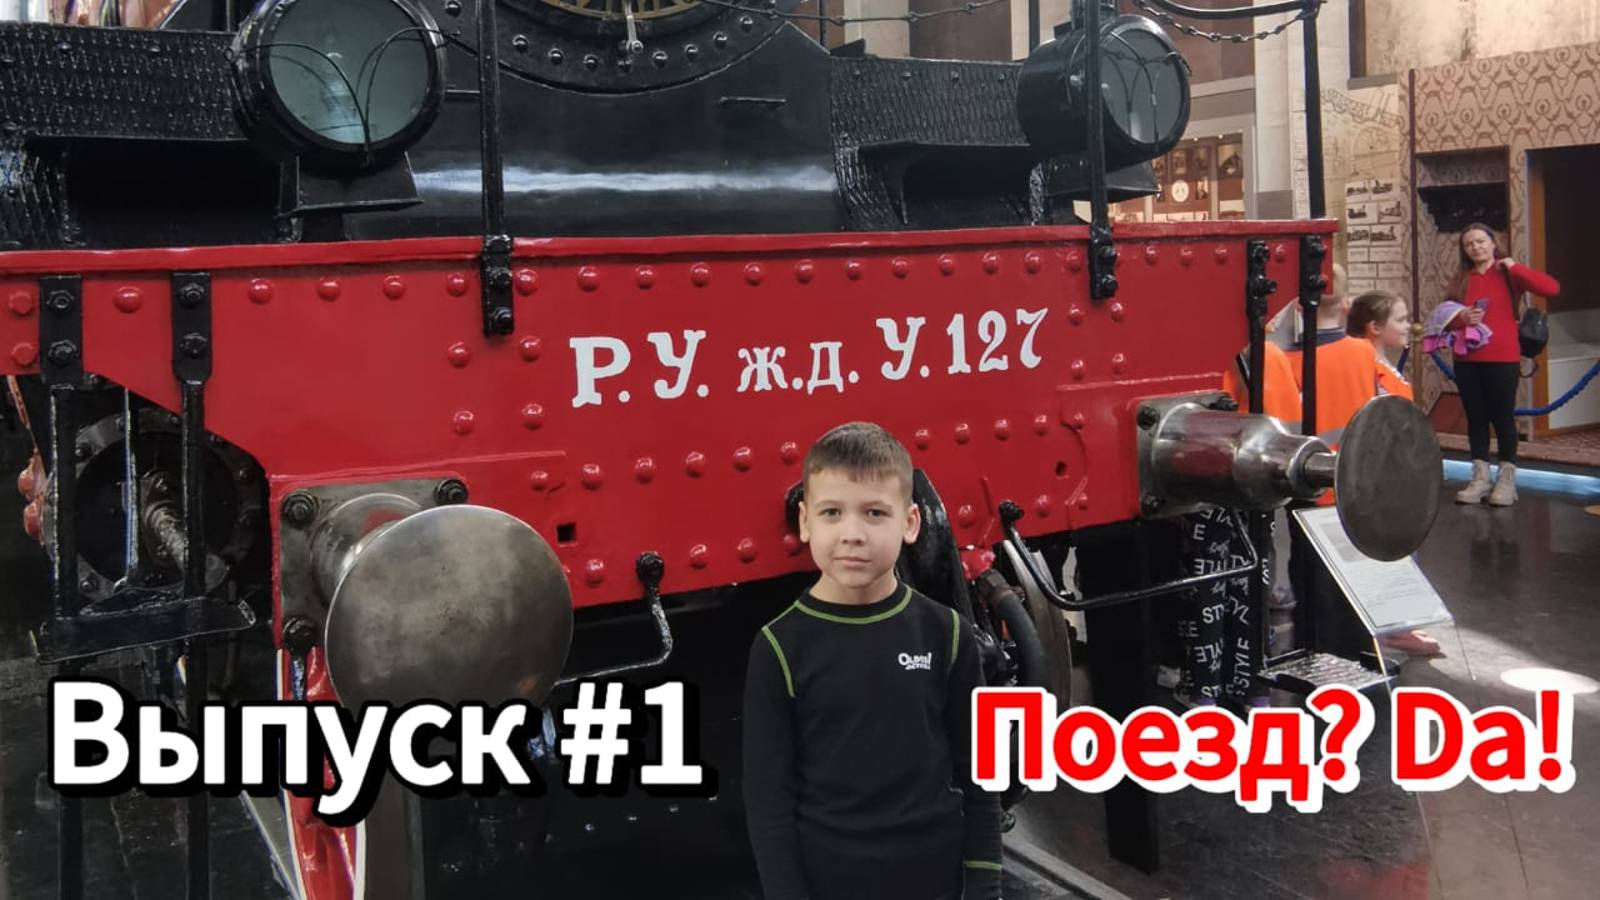 Поездка на Ласточке экспресс в Музей Московской железной дороги на Павелецкой!